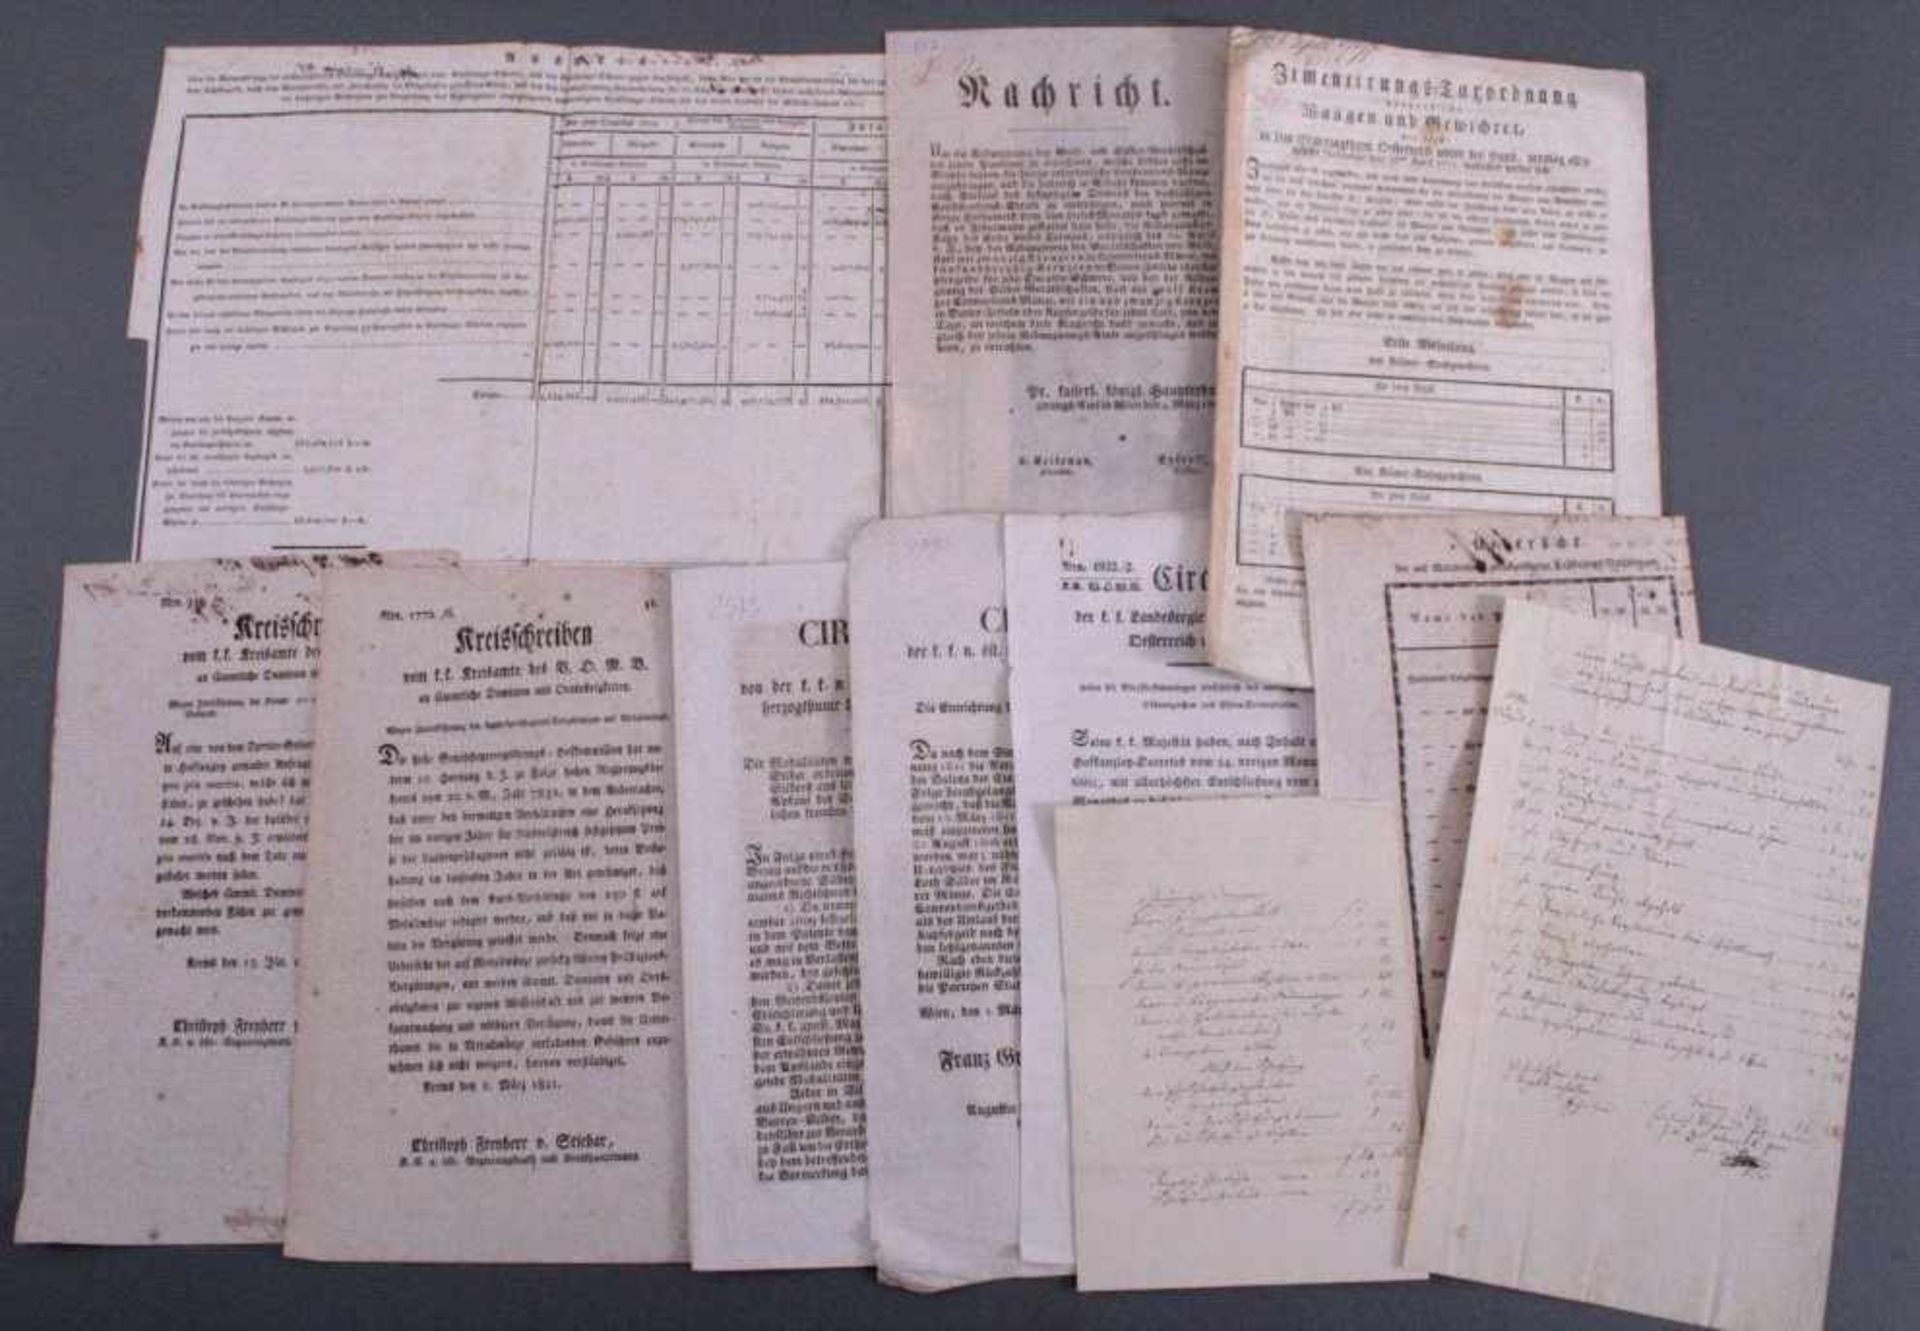 11 x Historische Dokumente, Circulare, Rundschreiben etc.1771 - 1835, insgesamt 11 Dokumente,